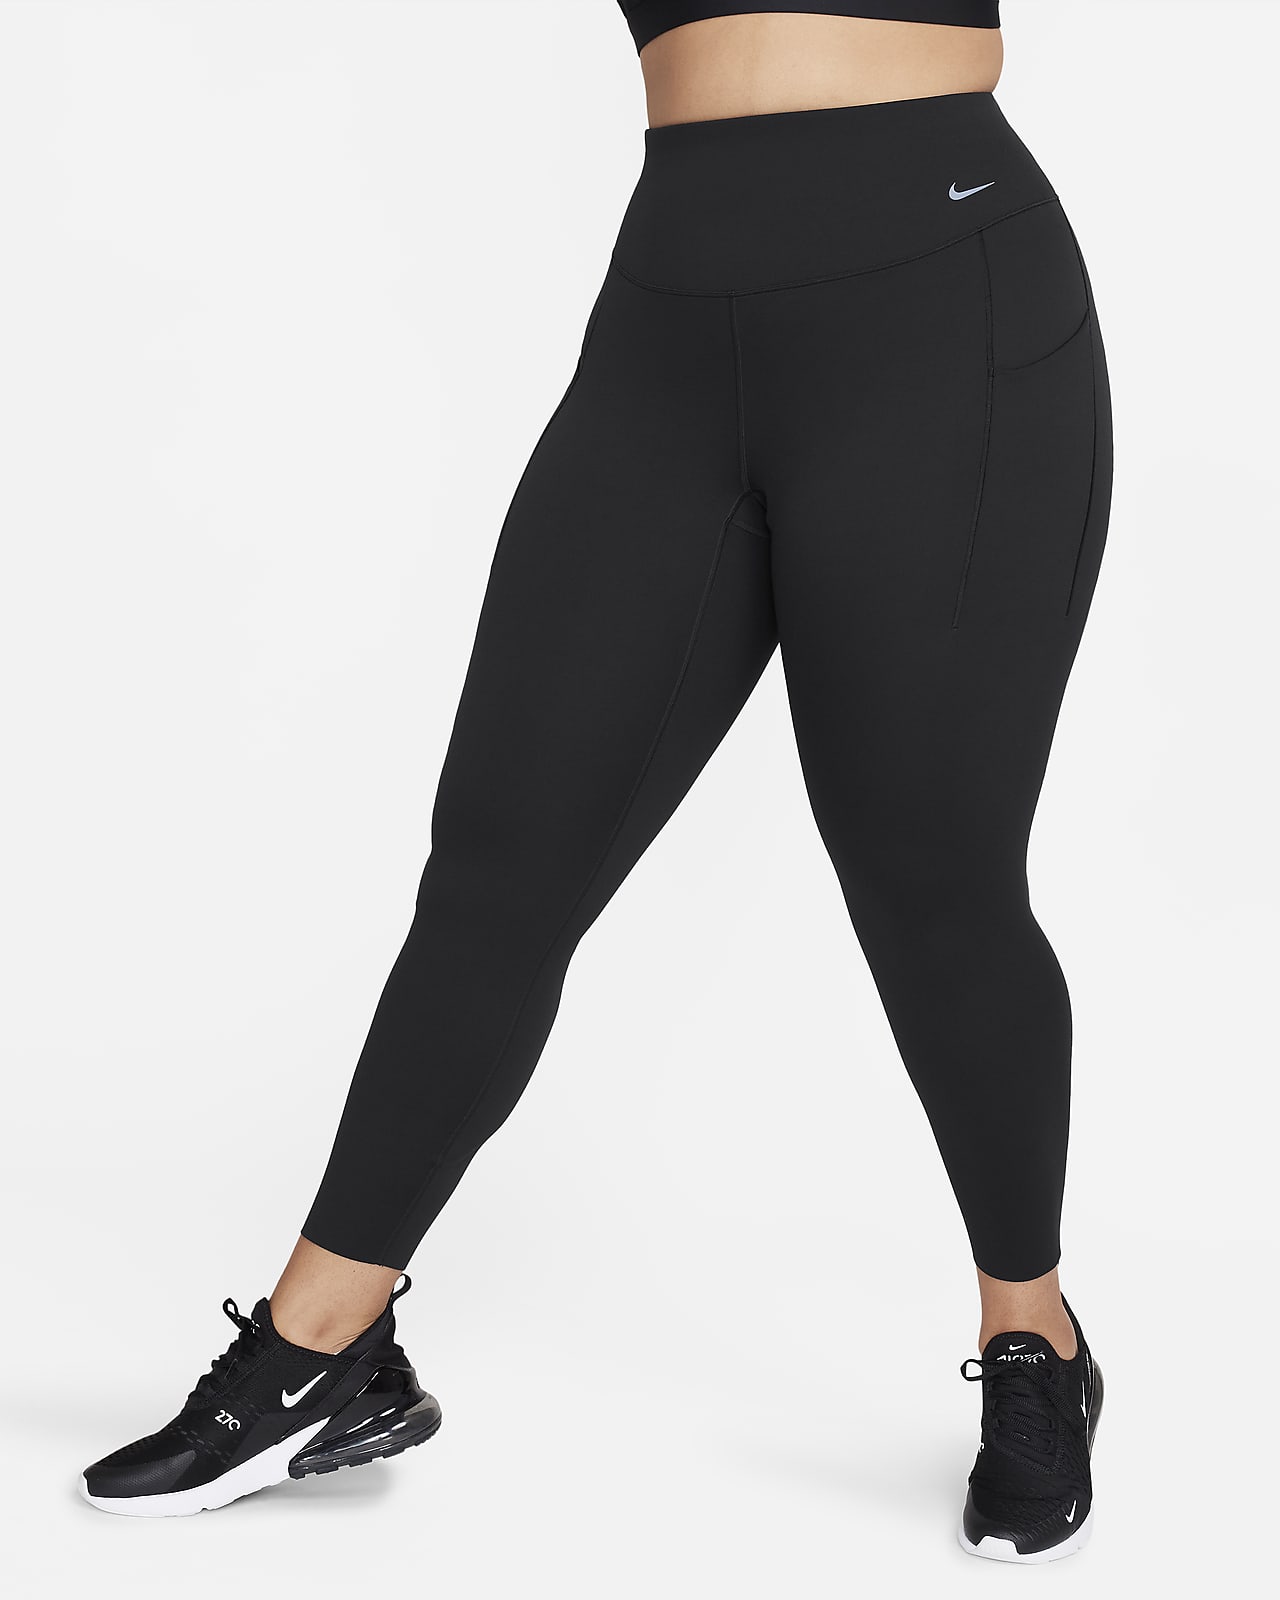 Damskie legginsy o pełnej długości z wysokim stanem i kieszeniami  zapewniające średnie wsparcie Nike Universa (duże rozmiary)